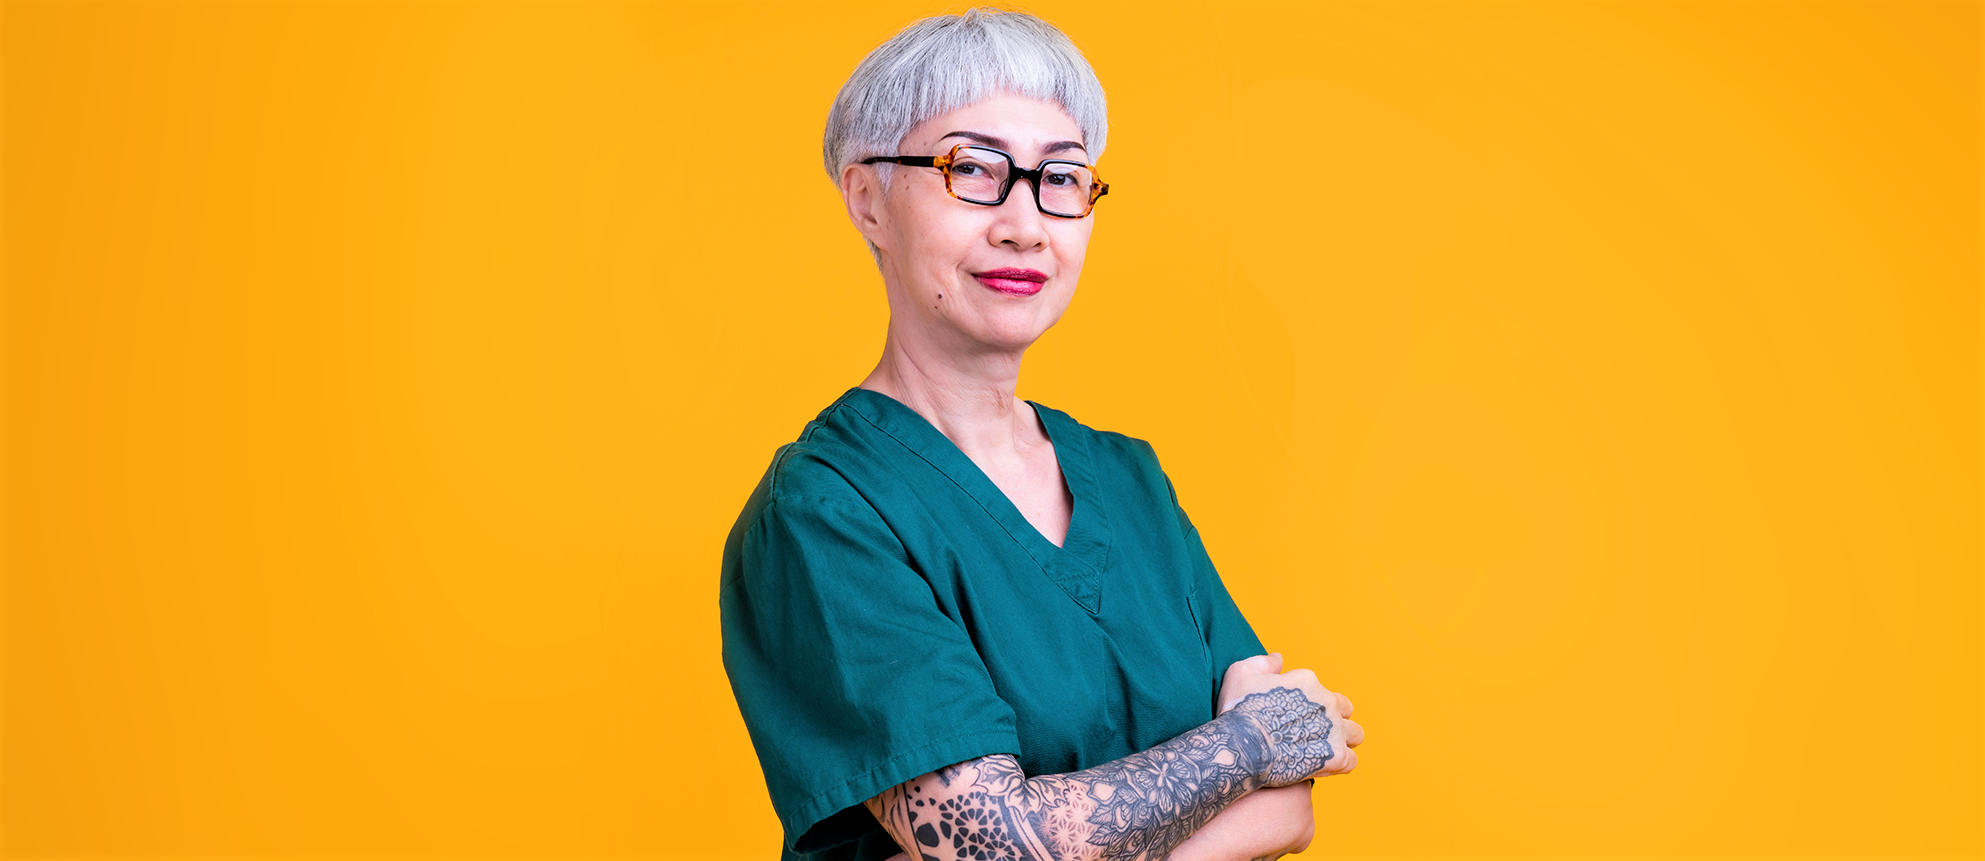 Eine ältere Frau mit Tattoos und kurzen Haaren posiert lächelnd in einer typischen Berufsbekleidung für Pfleger*innen vor einem einfarbigen gelben Hintergrund.